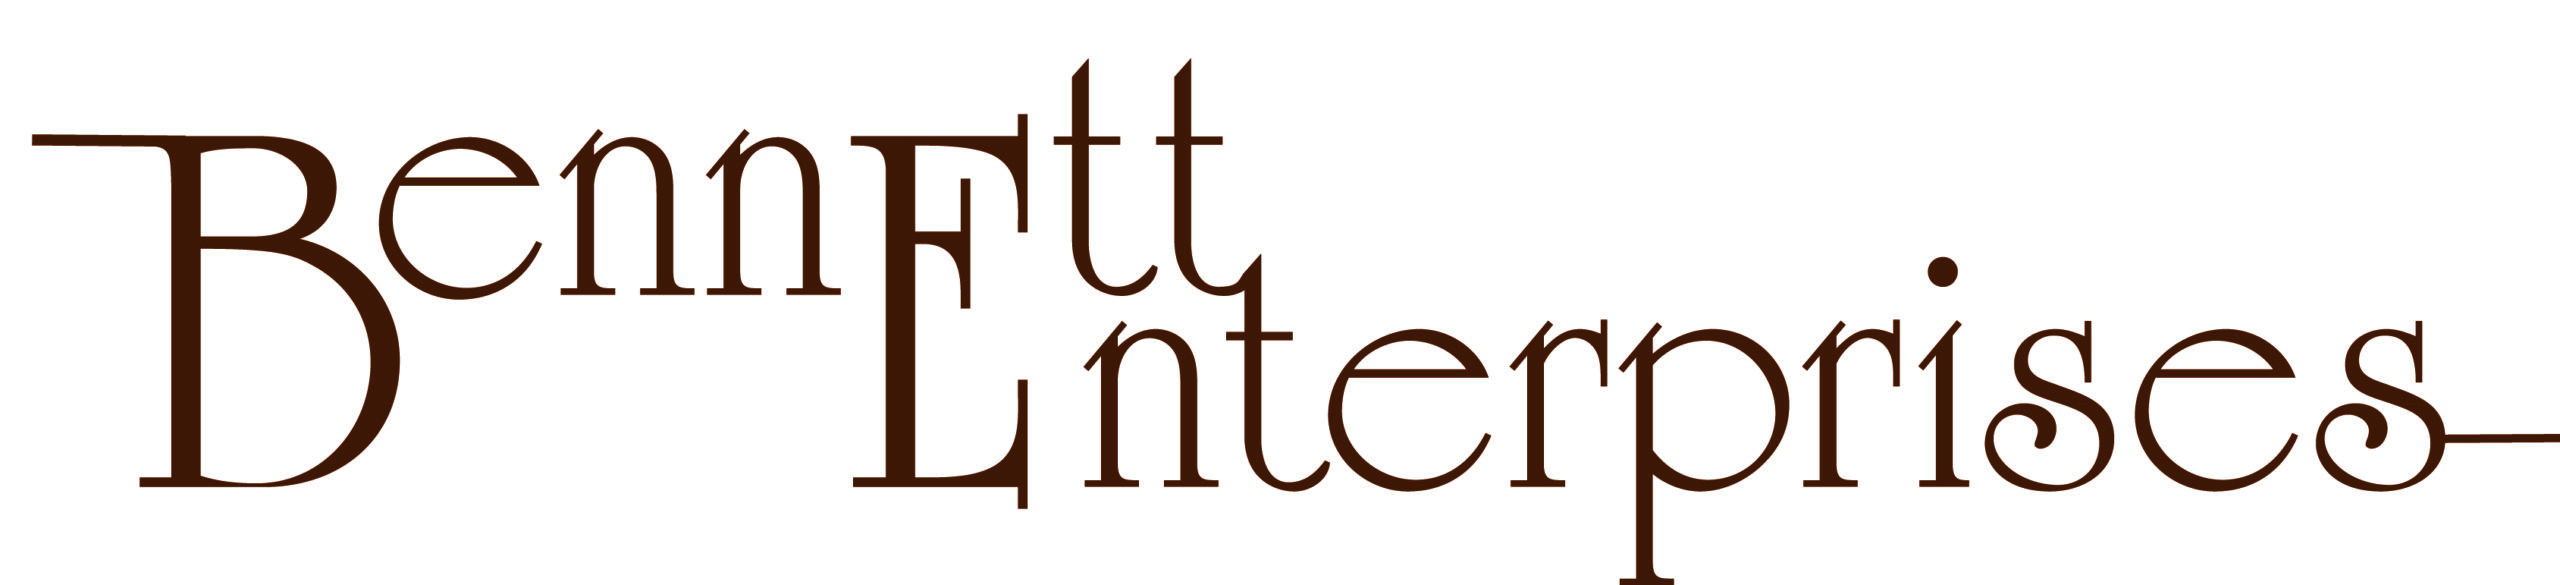 Bennett Enterprises